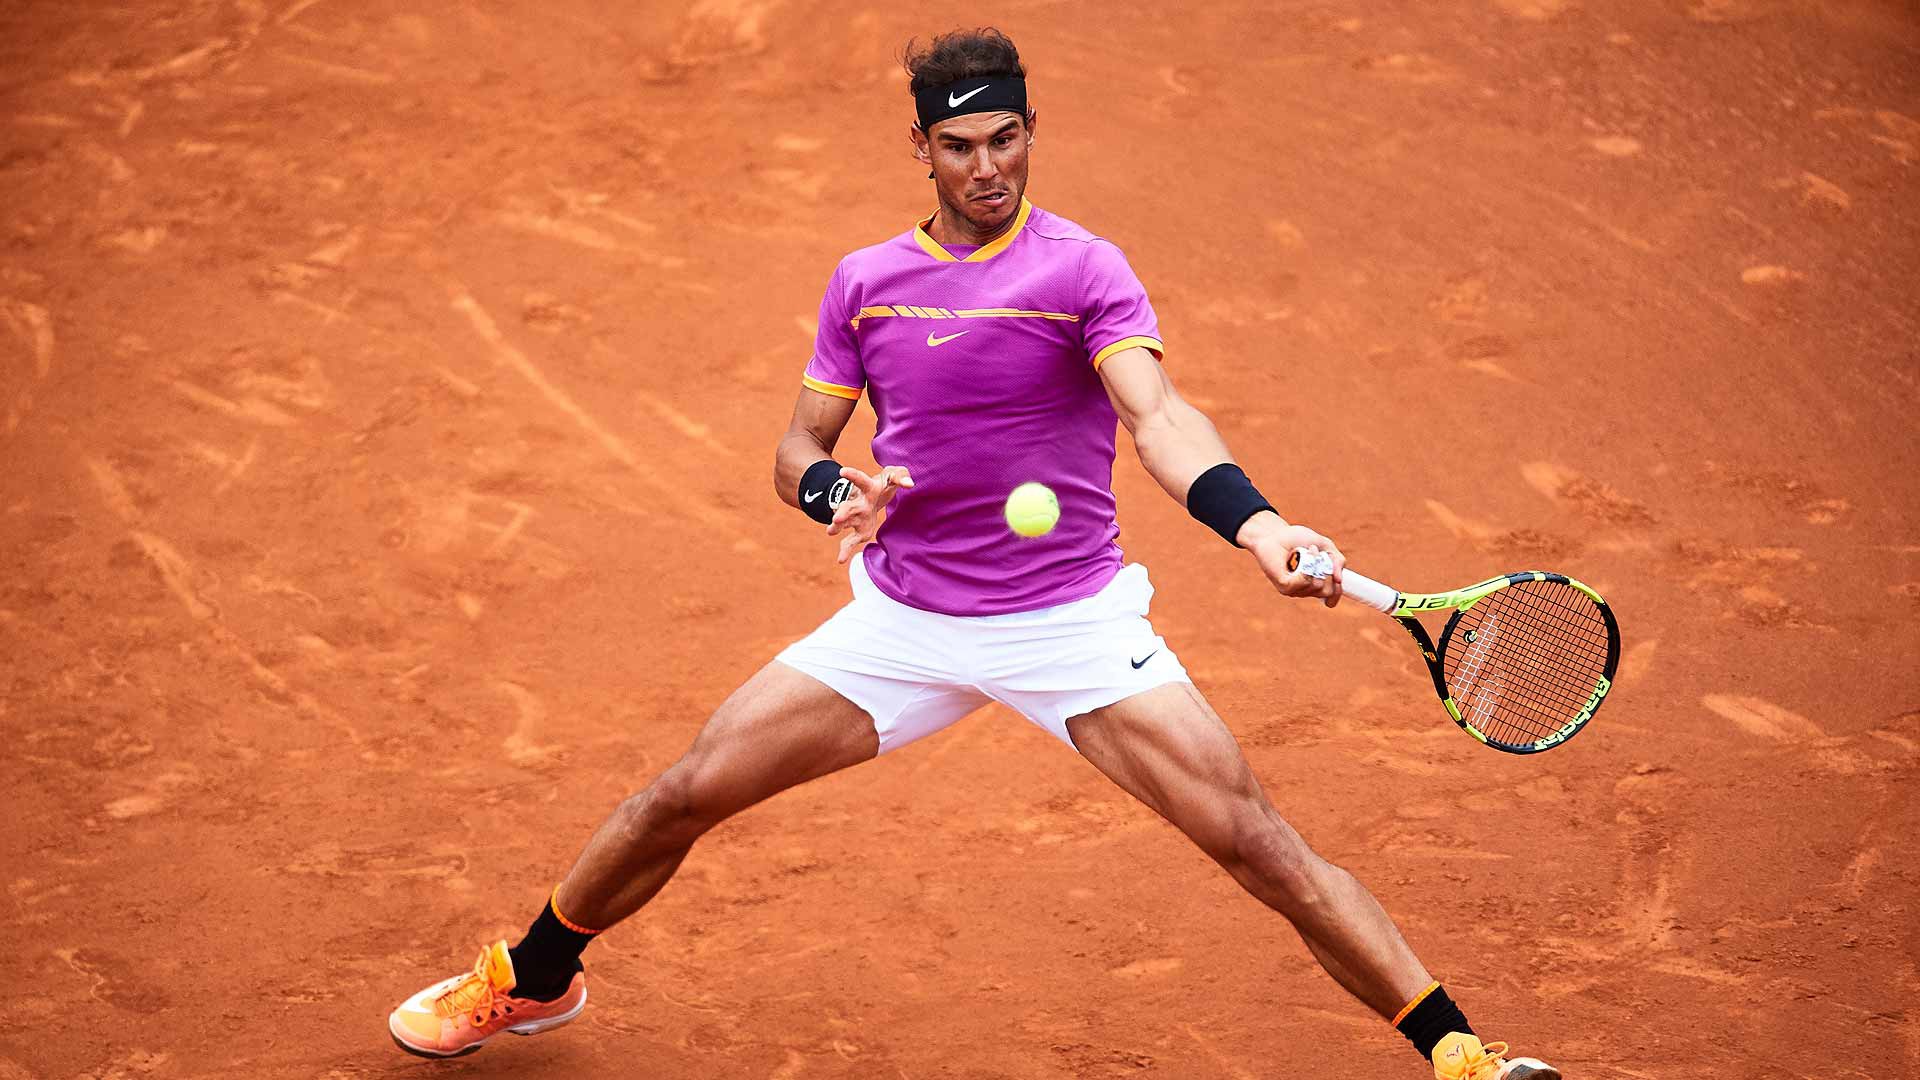 Hình ảnh: Nadal sẽ bảo vệ vương miện trên sân nhà Barcelona Open trong tuần này